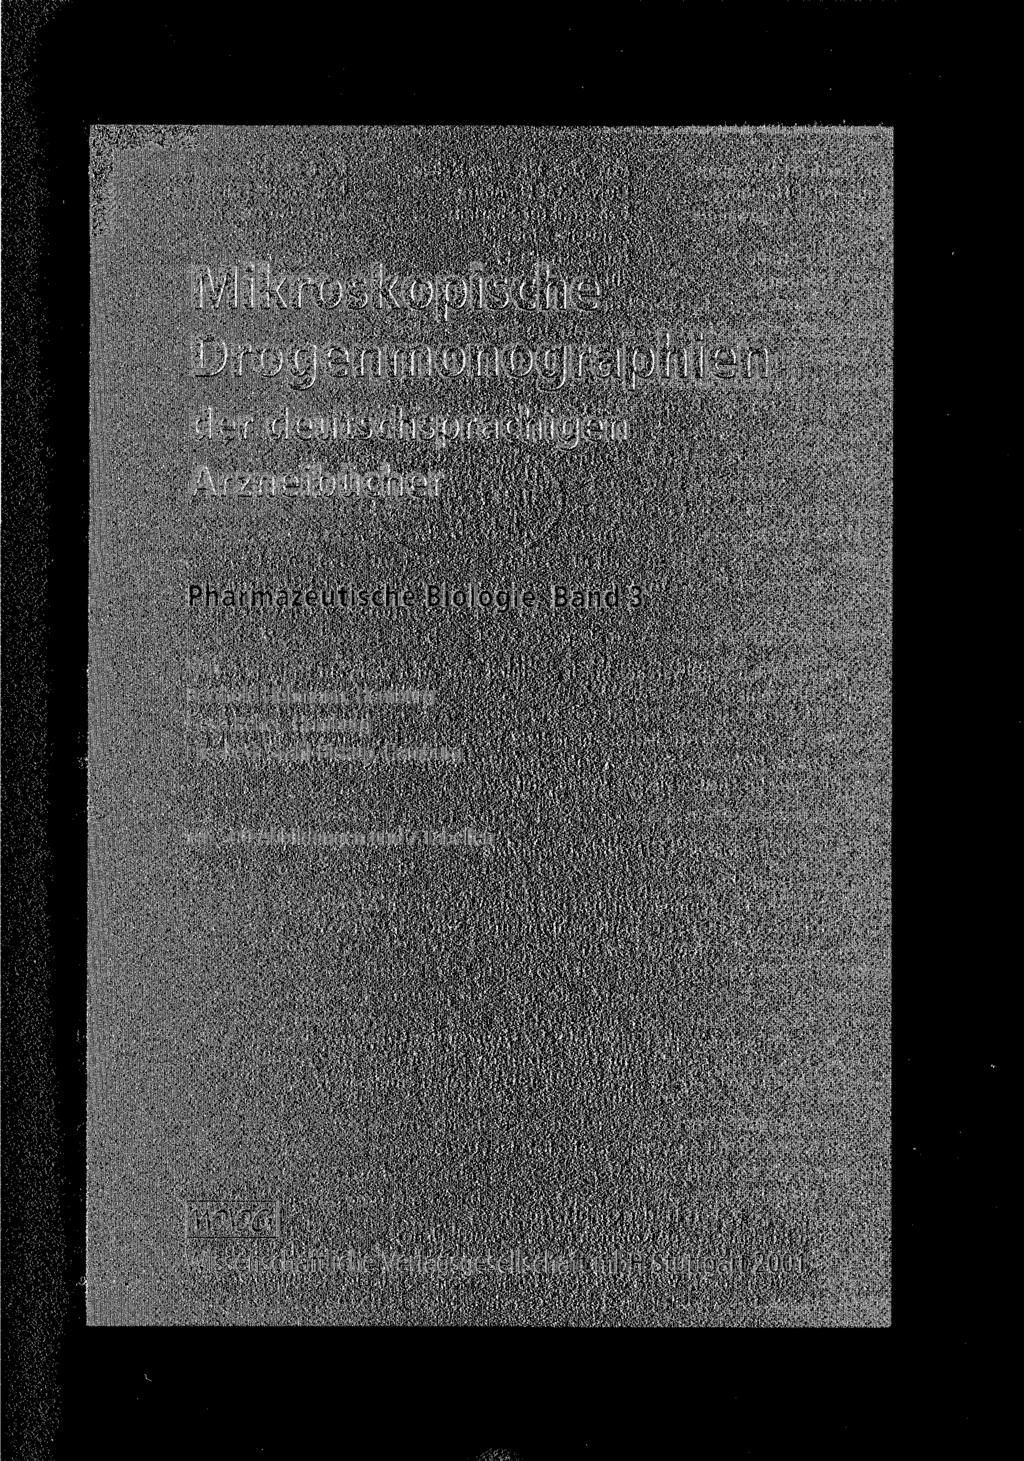 ikroskopische ipgtsilillofluyicipilisp der deutschsprachigen nneiducner Pharmazeutische Biologie, Band 3 Von Berthold Hohmann, Hamburg Gesa